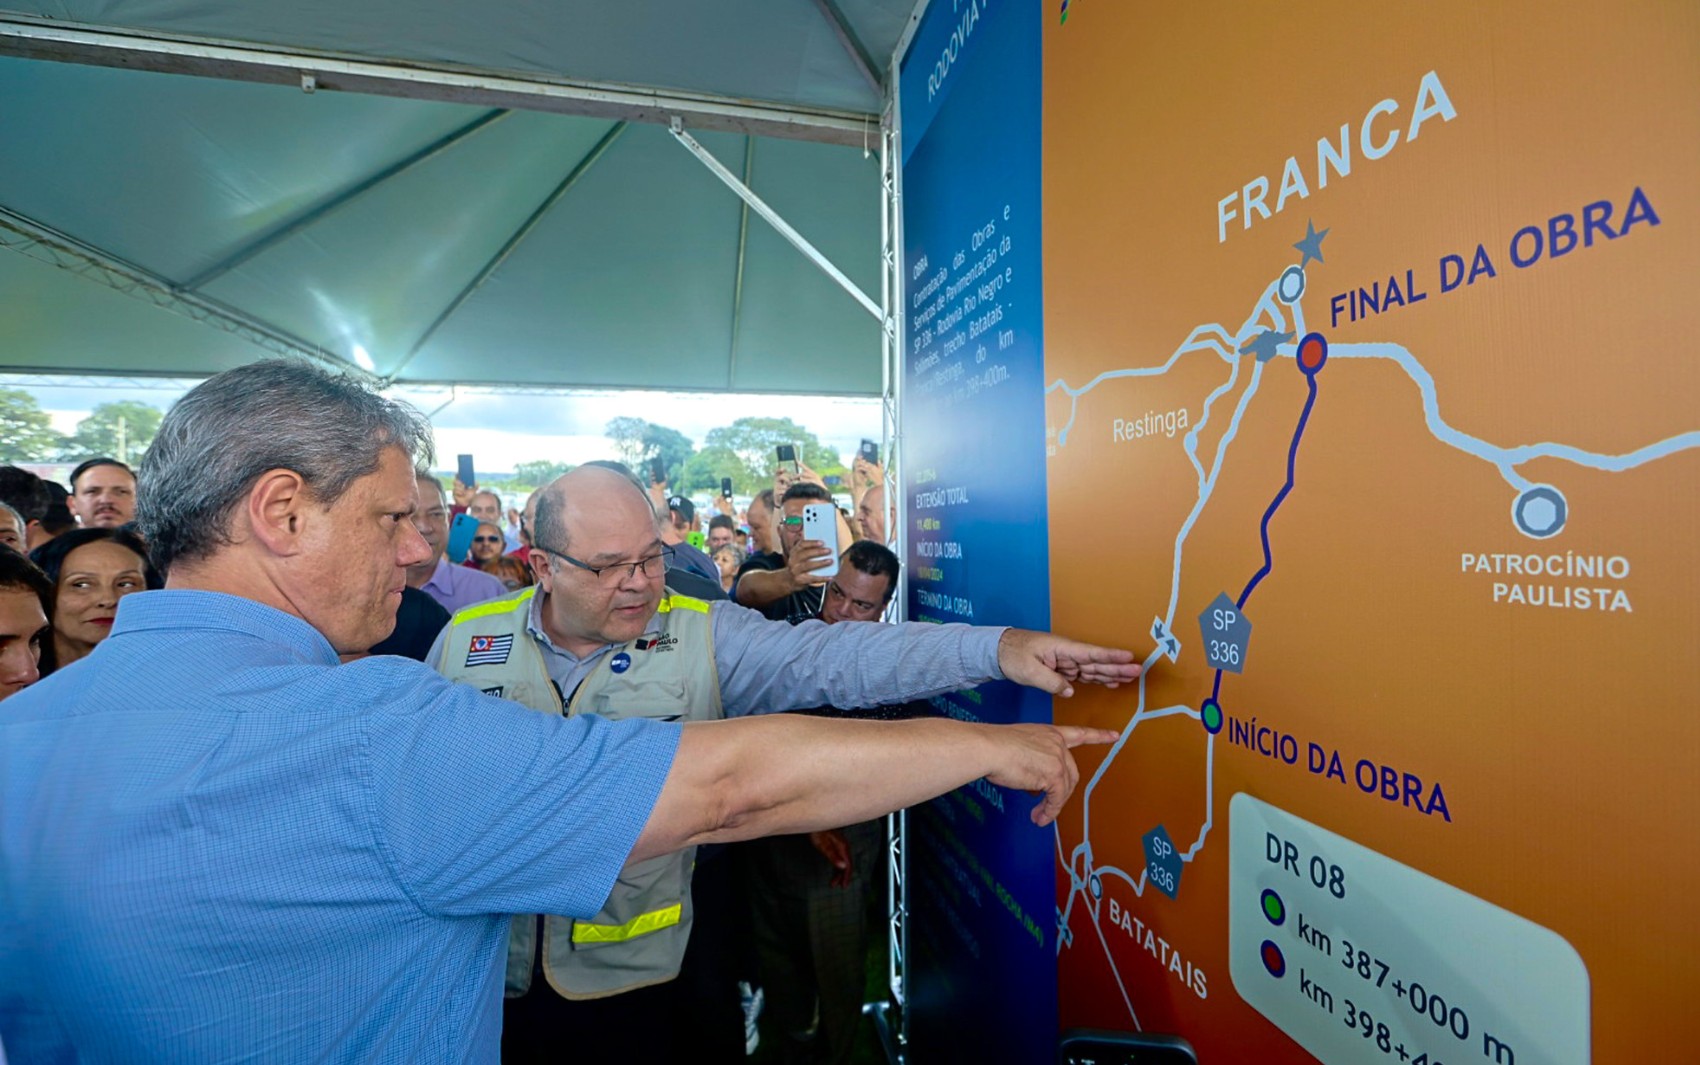 Após apelo de Rionegro, governo de SP começa obras da rodovia que leva nome de dupla sertaneja em Franca